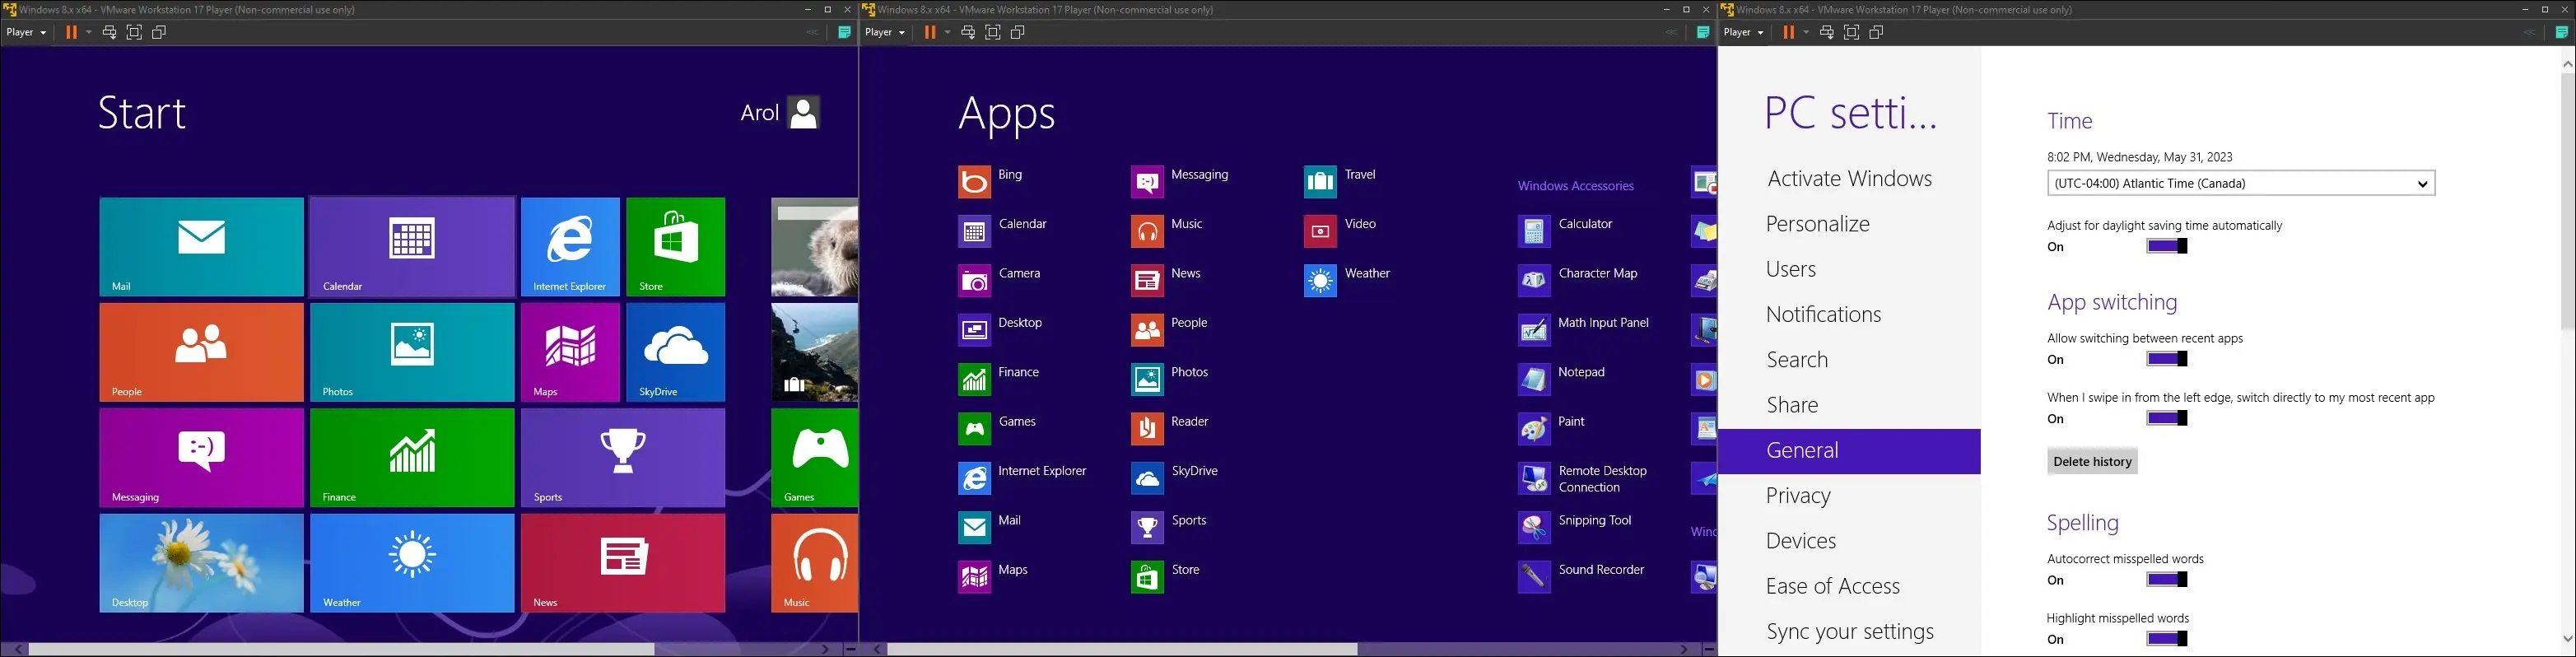 صور Windows 8 على جهاز افتراضي ، تعرض قائمة البدء ، وقائمة جميع التطبيقات ، وتطبيق الإعدادات